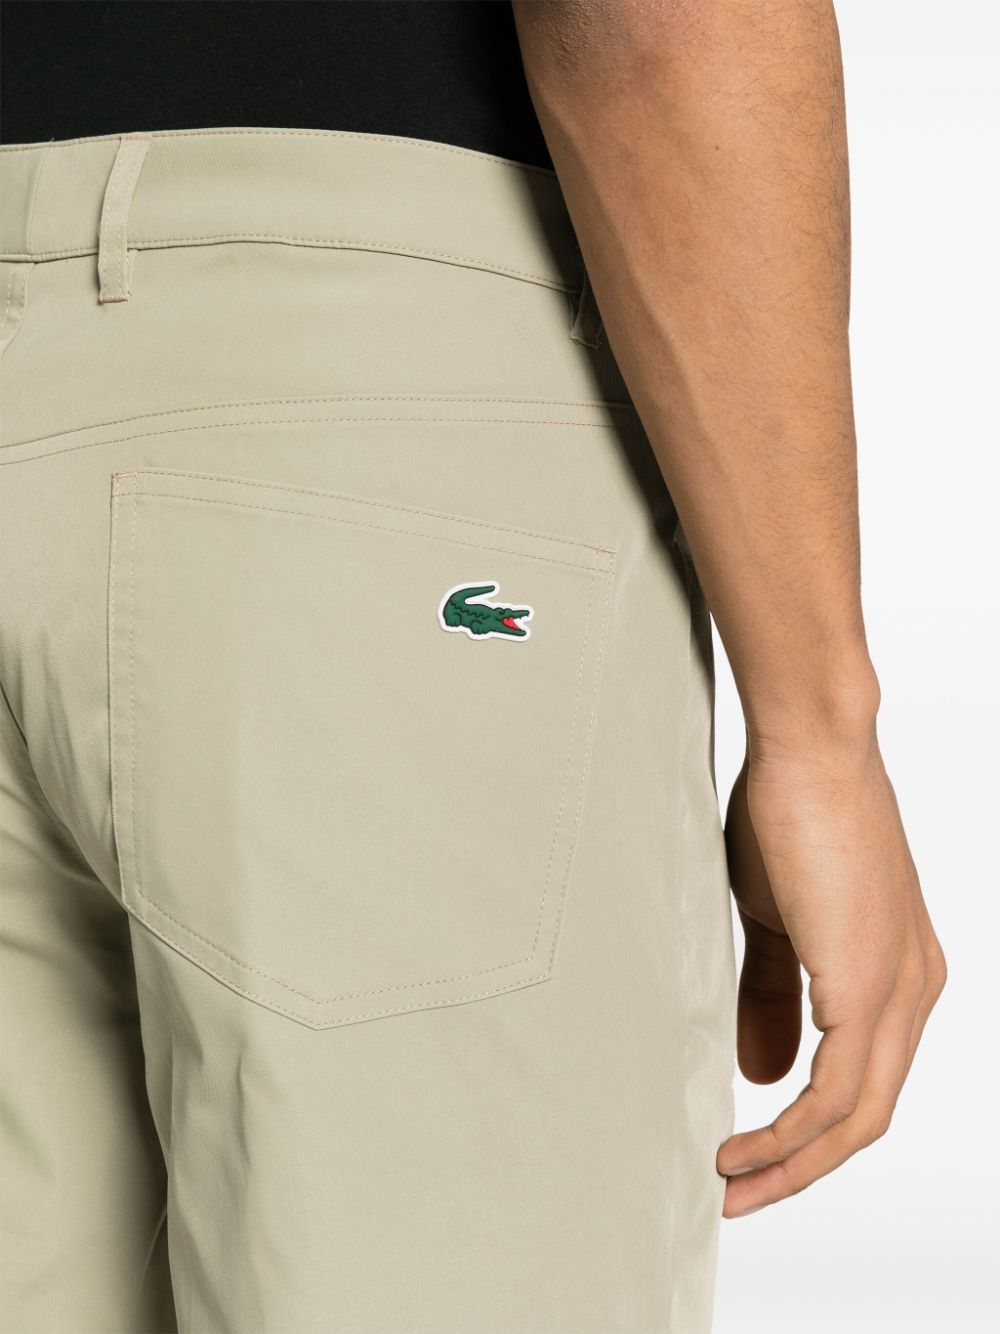 Pantaloni in twill con patch logo<br><br>